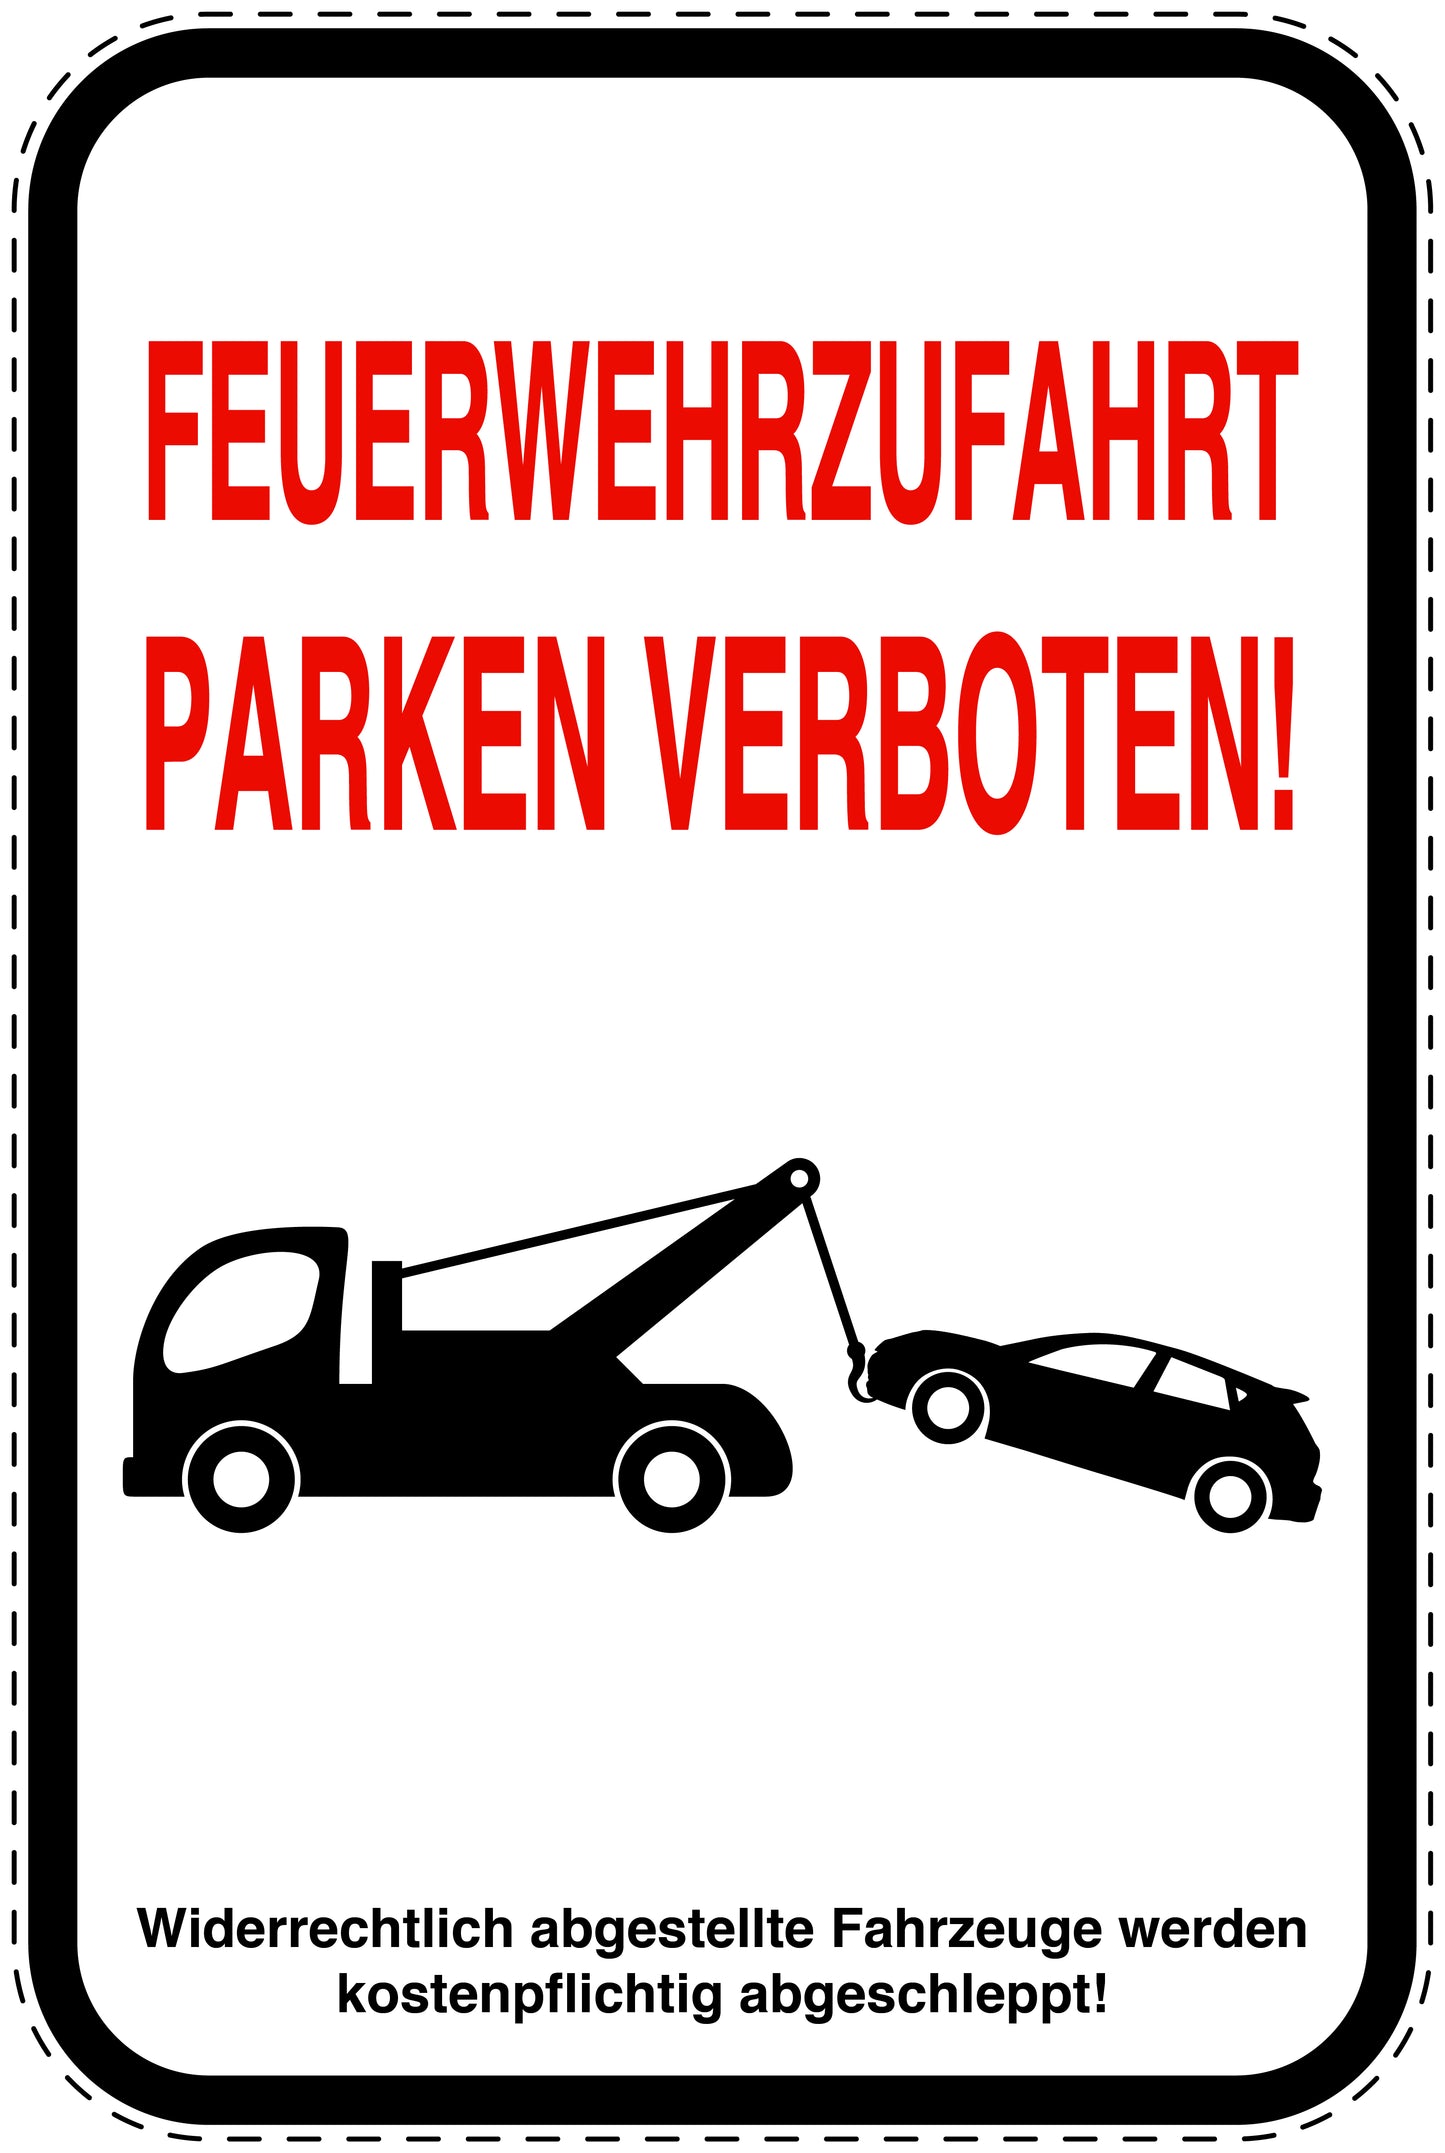 Parkplatzverbotsschilder (Parken verboten) als Aufkleber LO-PARKEN-24500-H-0